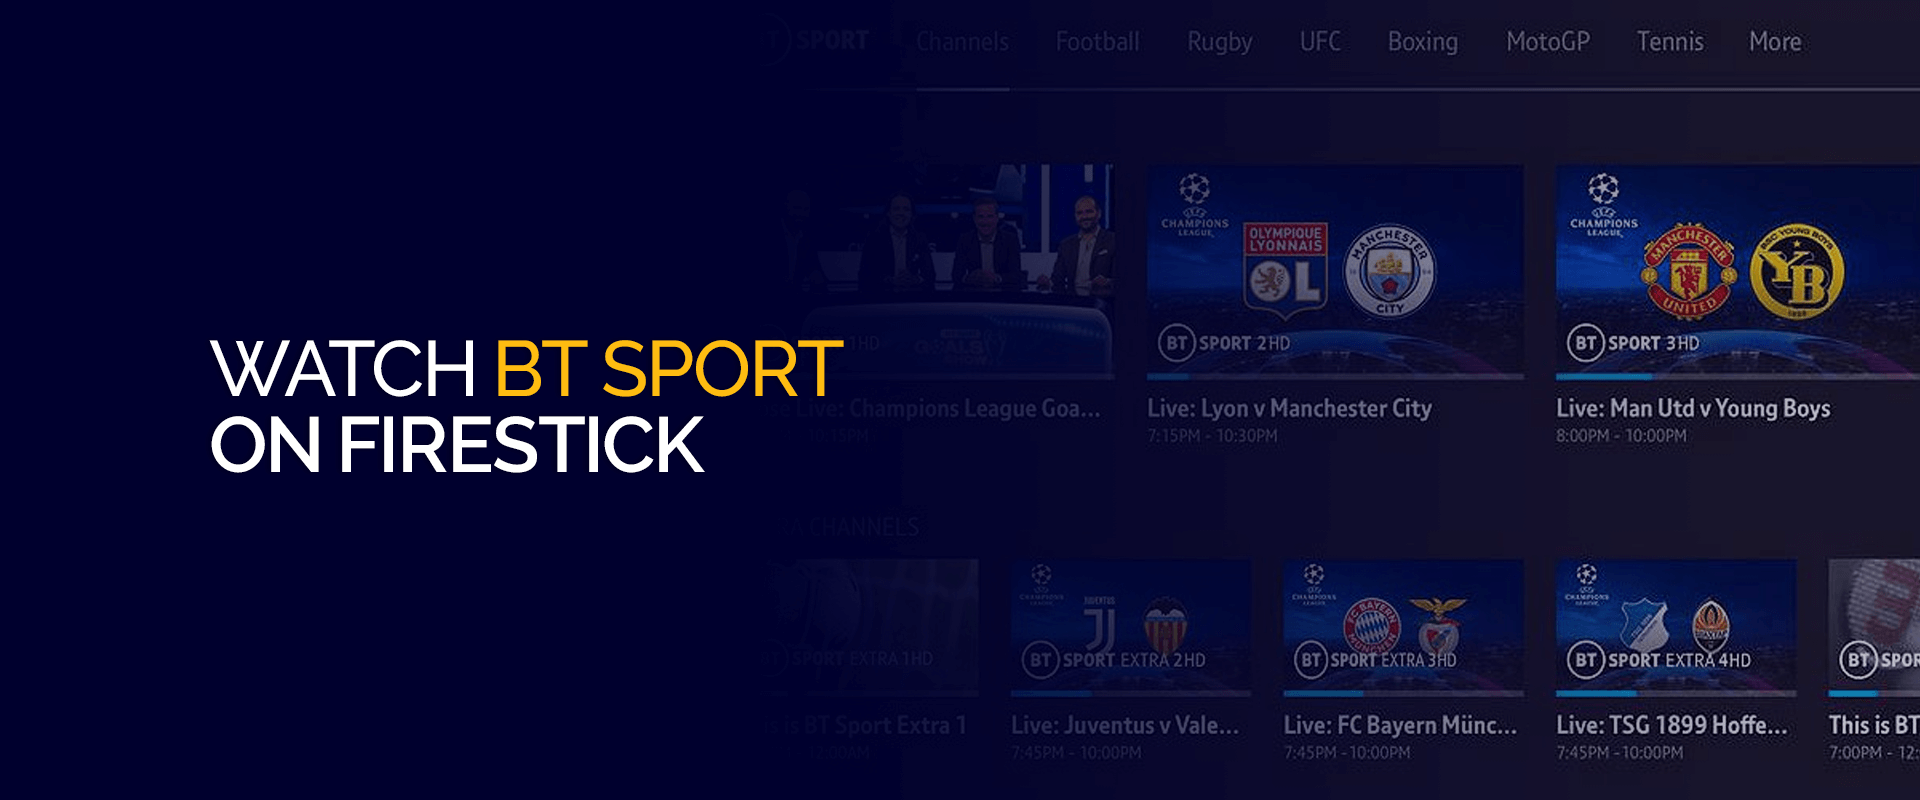 How to watch BT Sport on Firestick